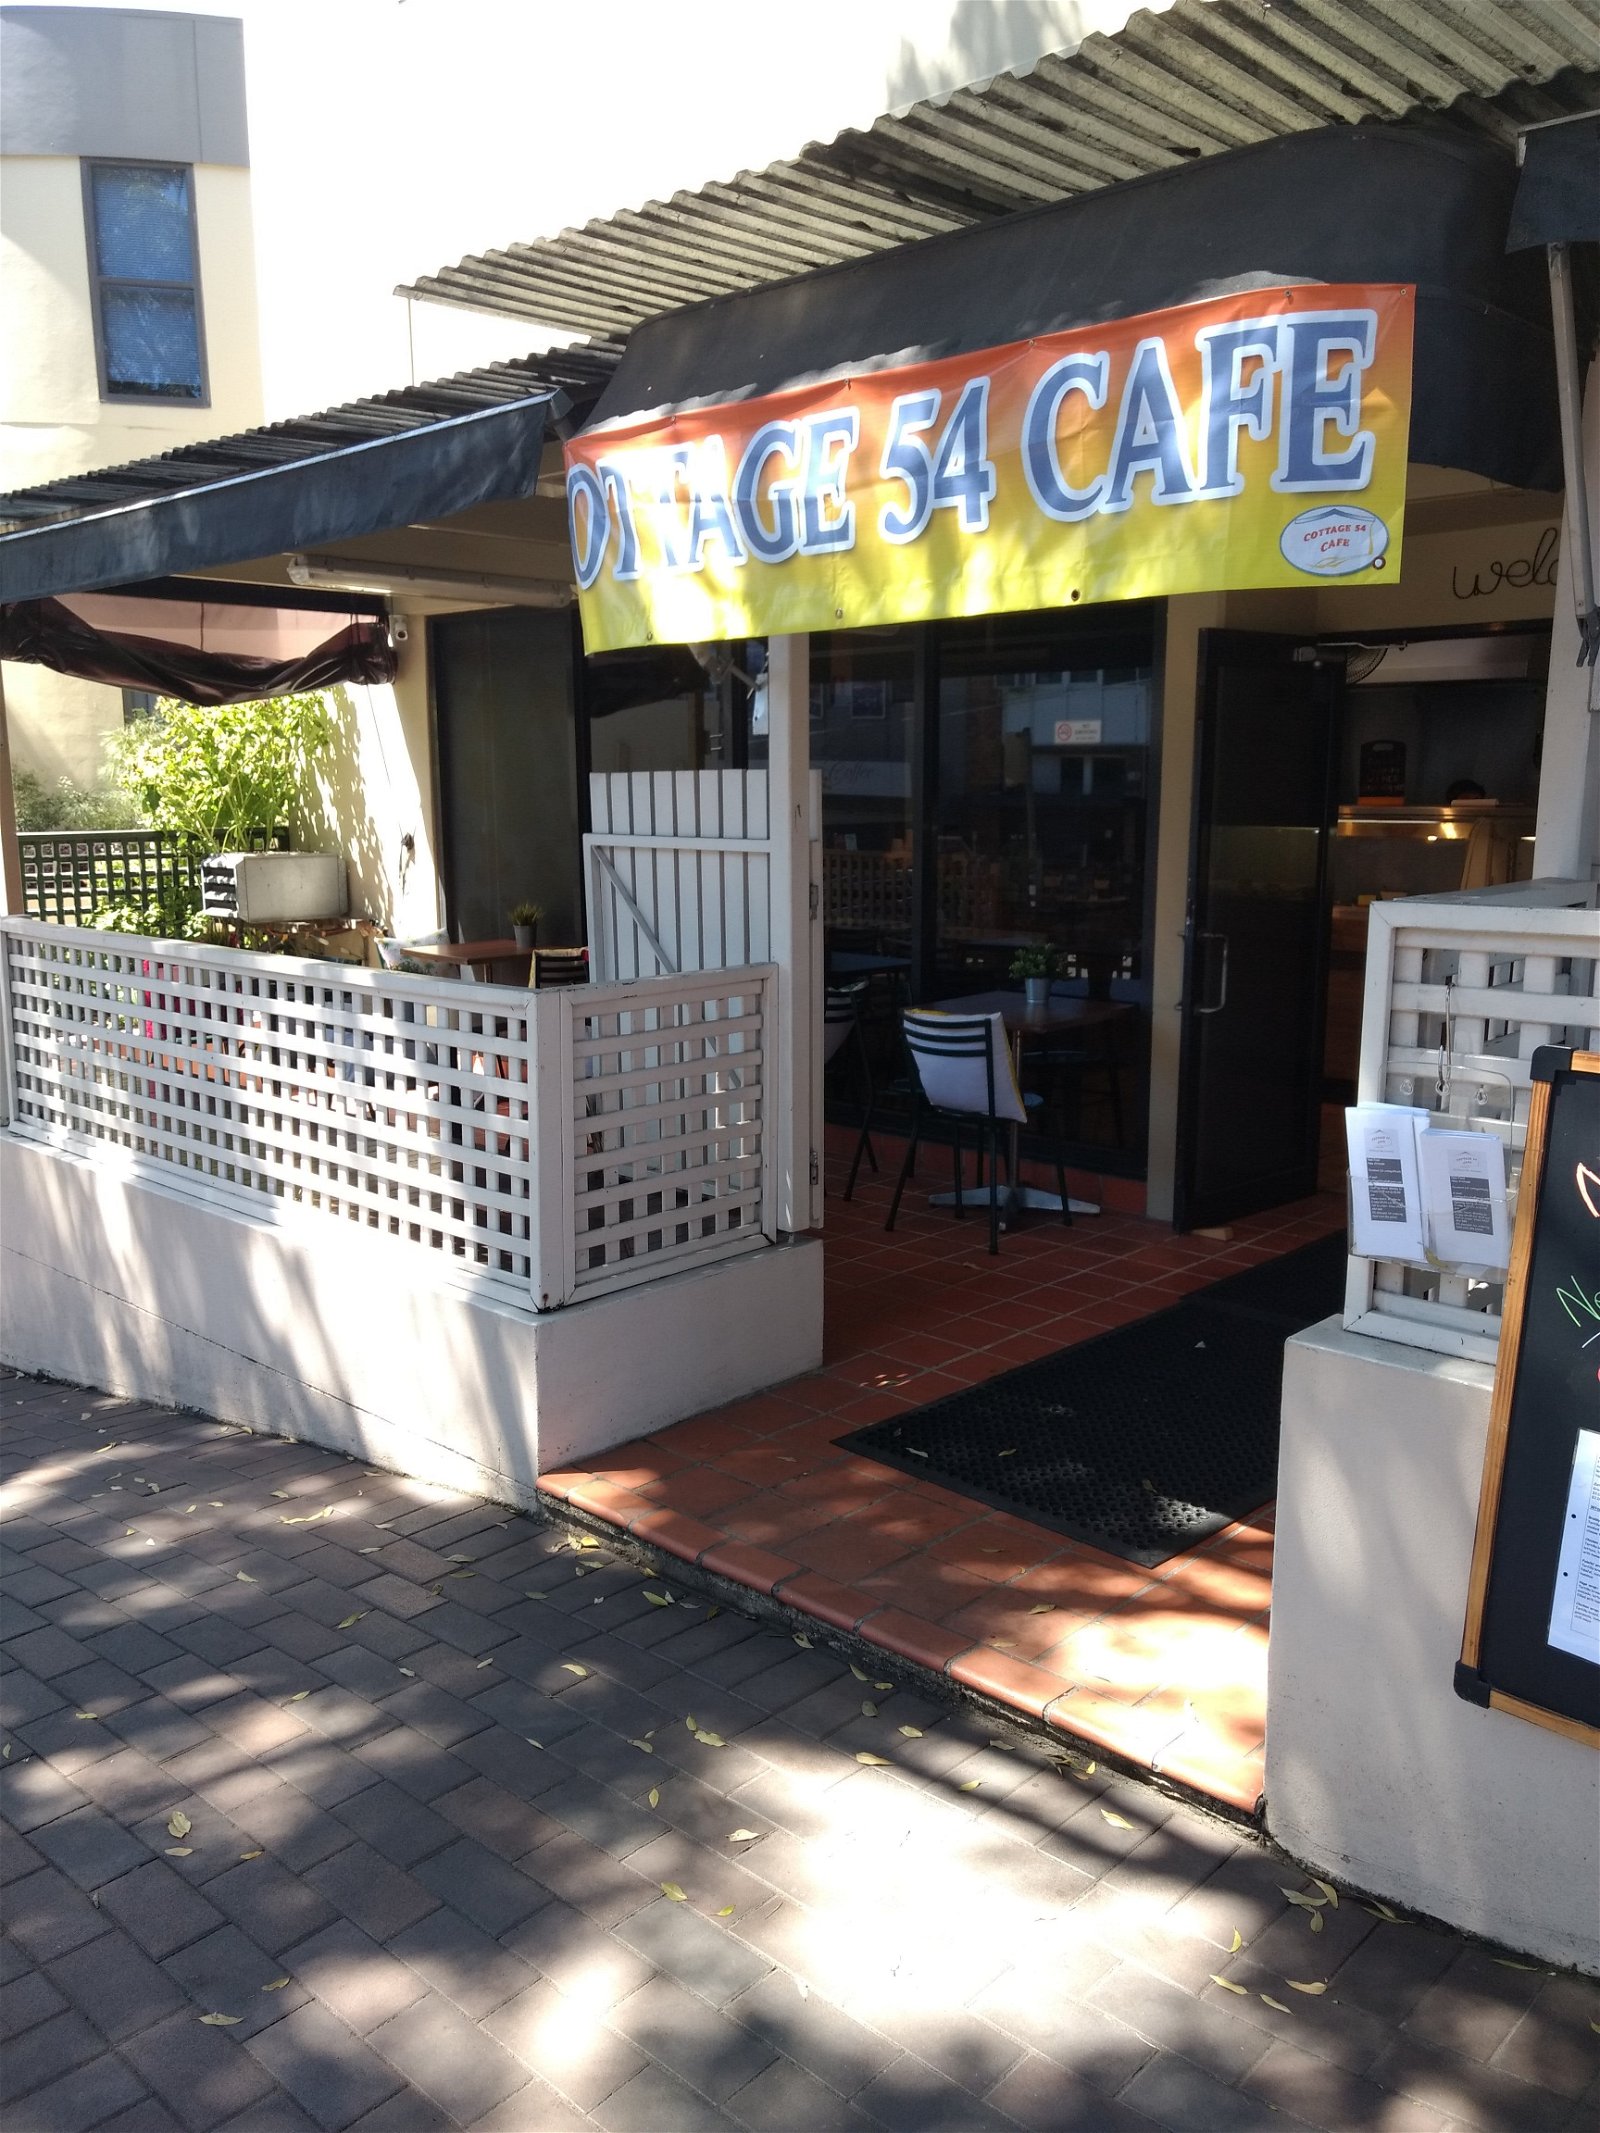 Cottage 54 Cafe - Food Delivery Shop